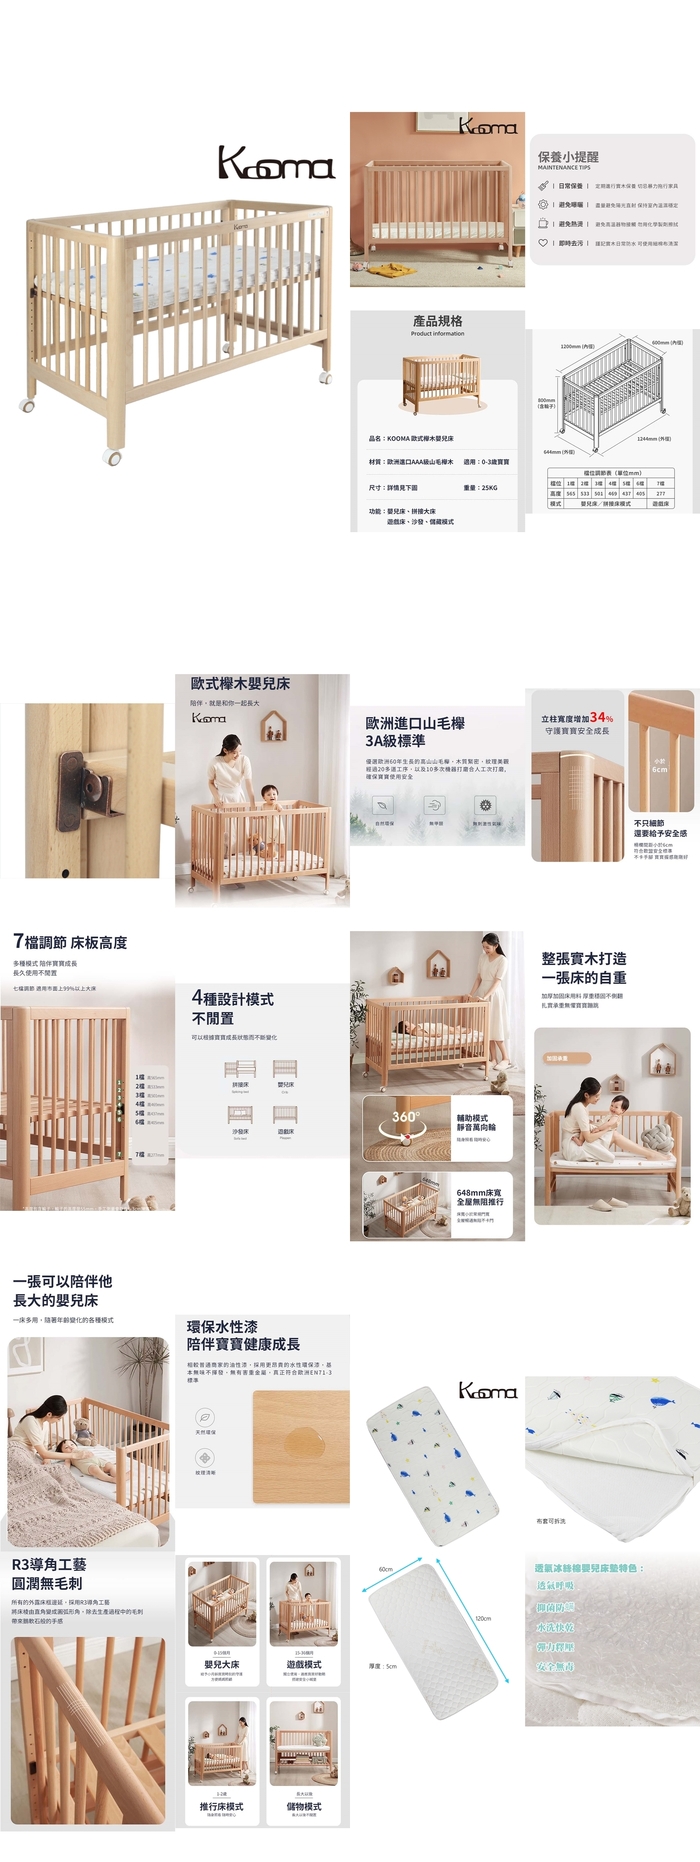 優兒堡-KOOMA歐式櫸木嬰兒中床(含床墊)KMAC102-1